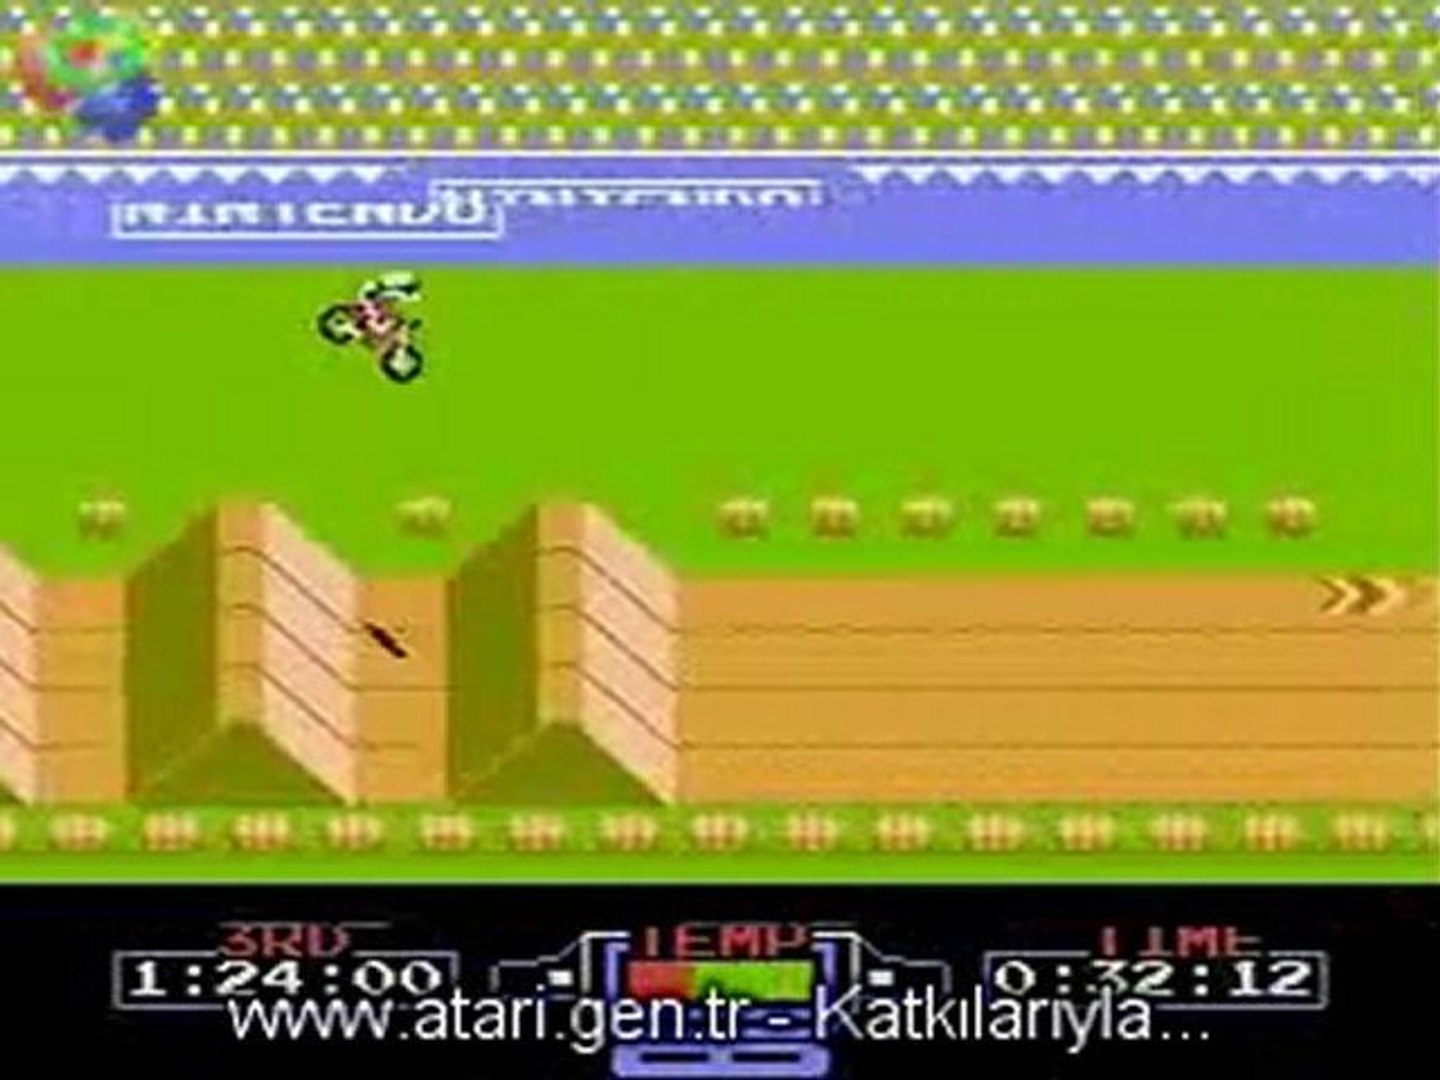 Ataride en sevilen Motor Yarışı - Atari.gen.tr - Dailymotion Video